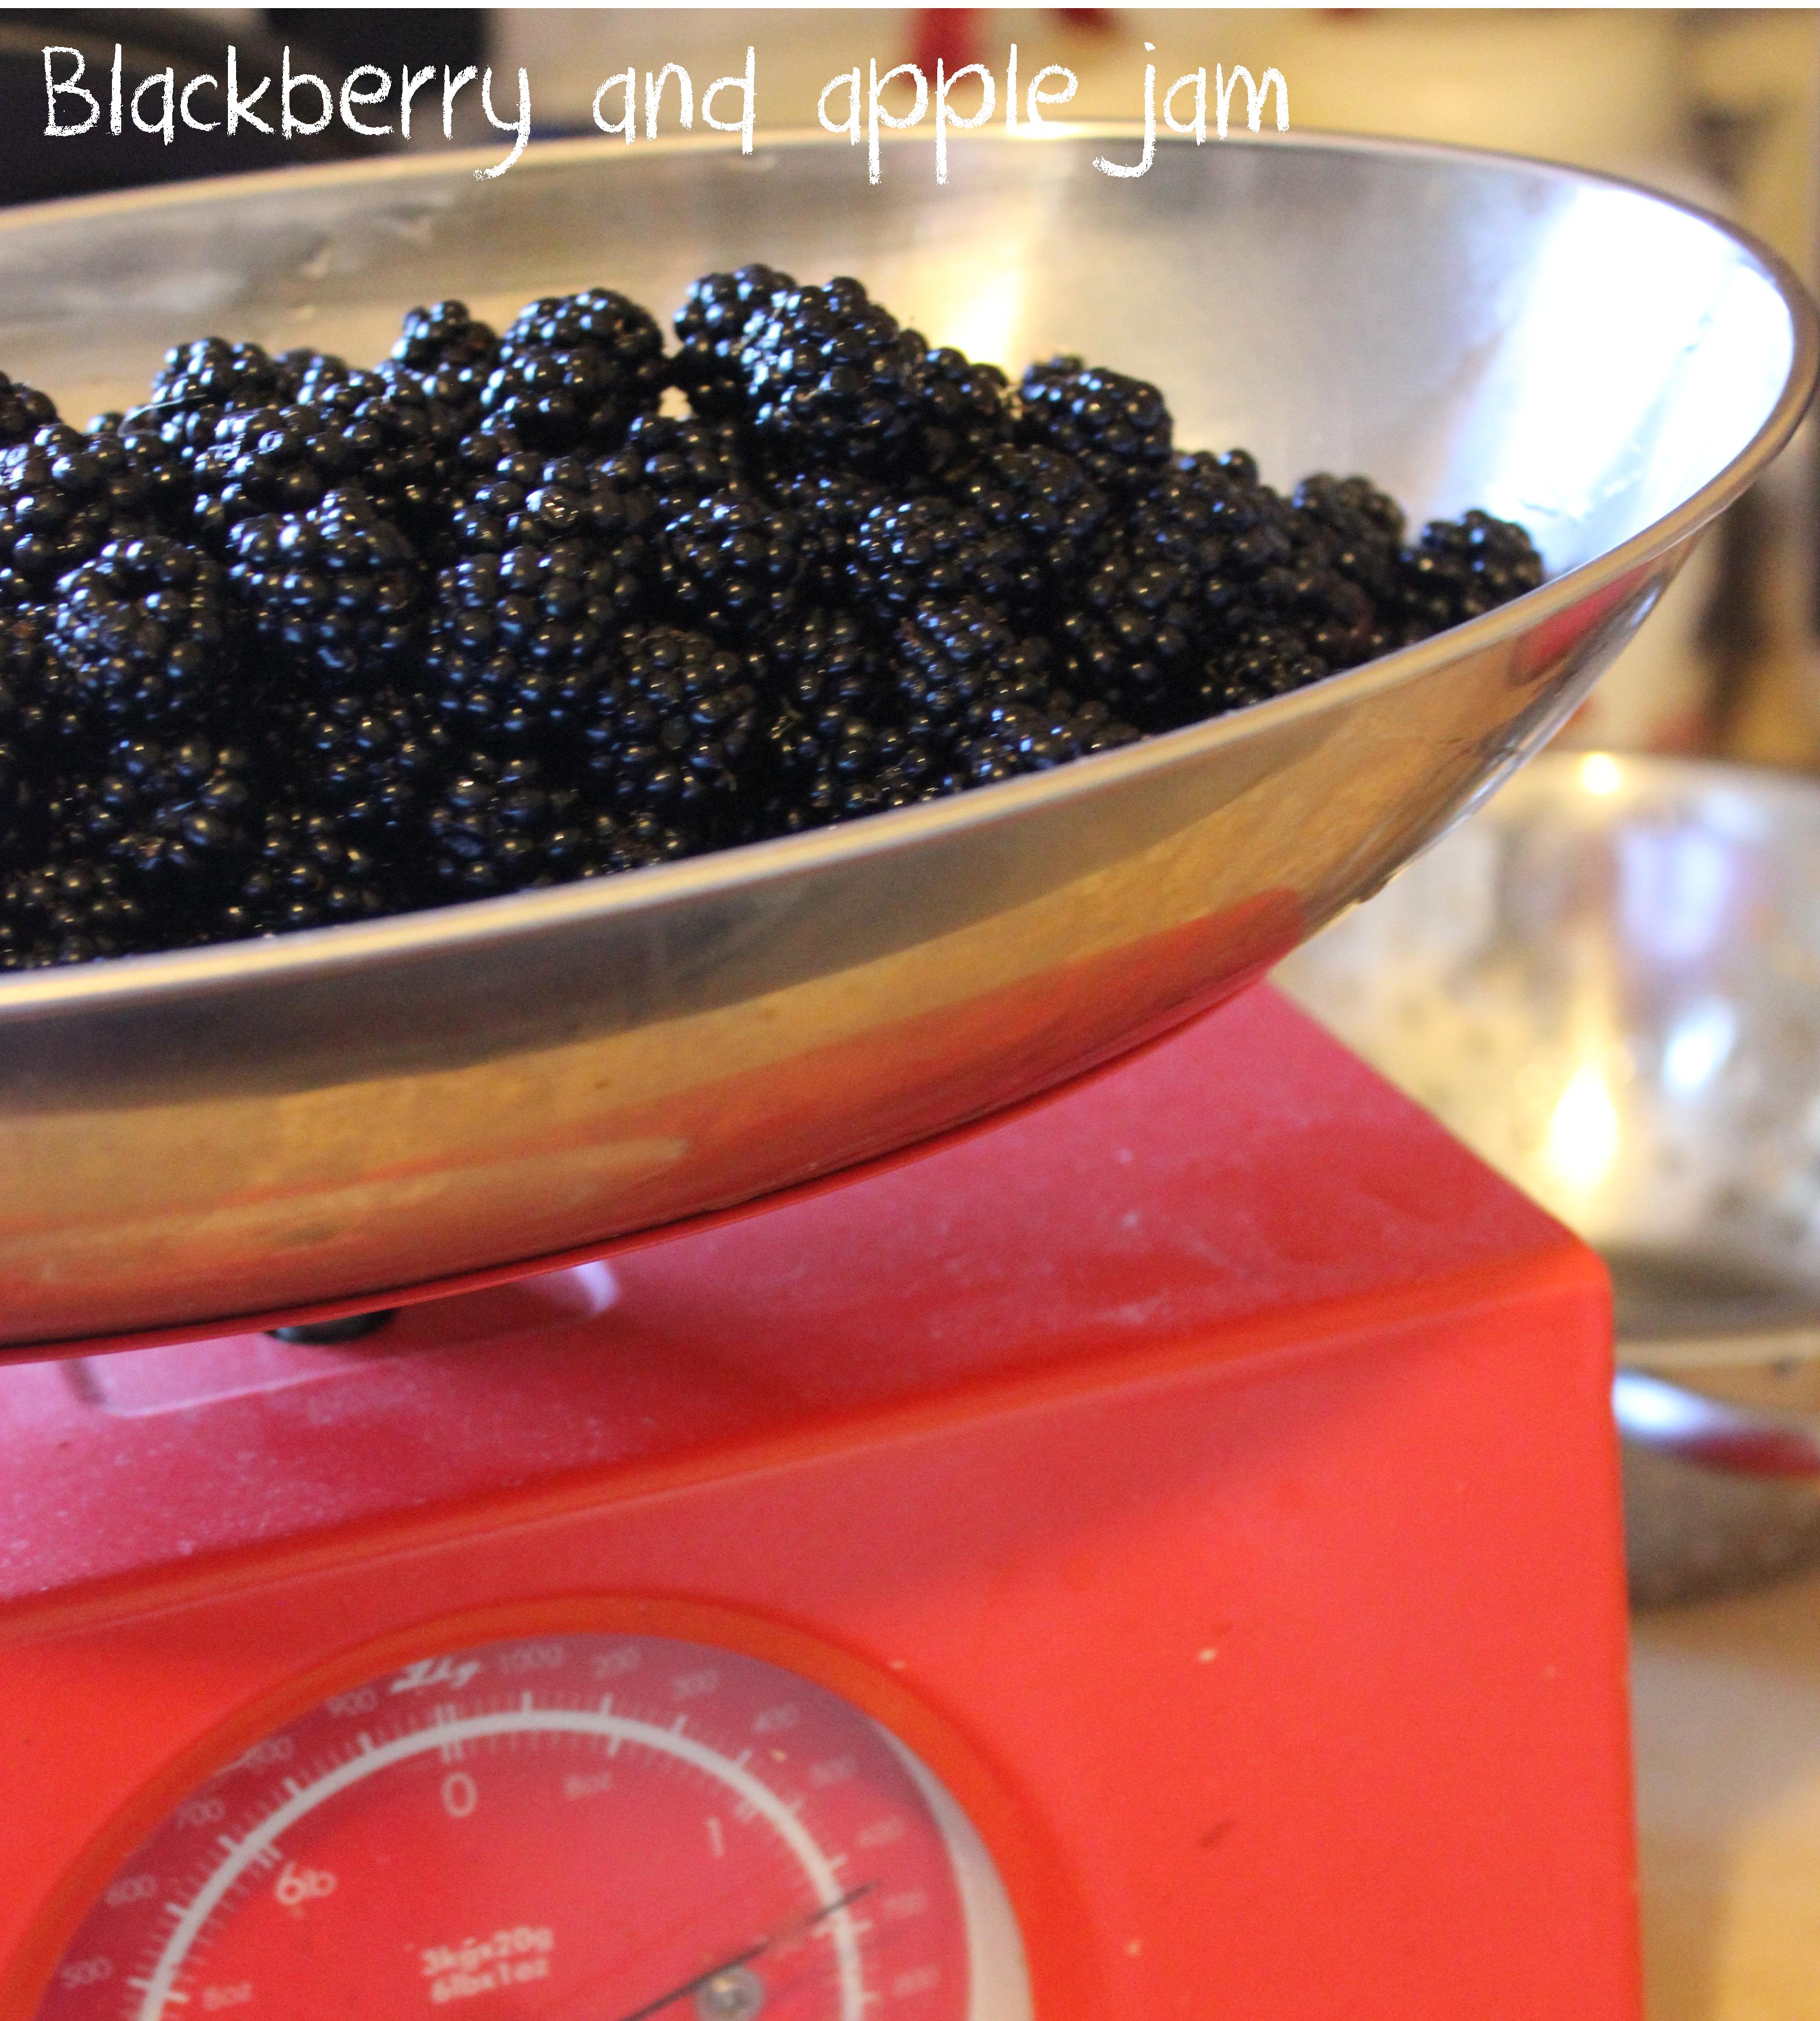 making preserves - blackberry and apple jam recipe